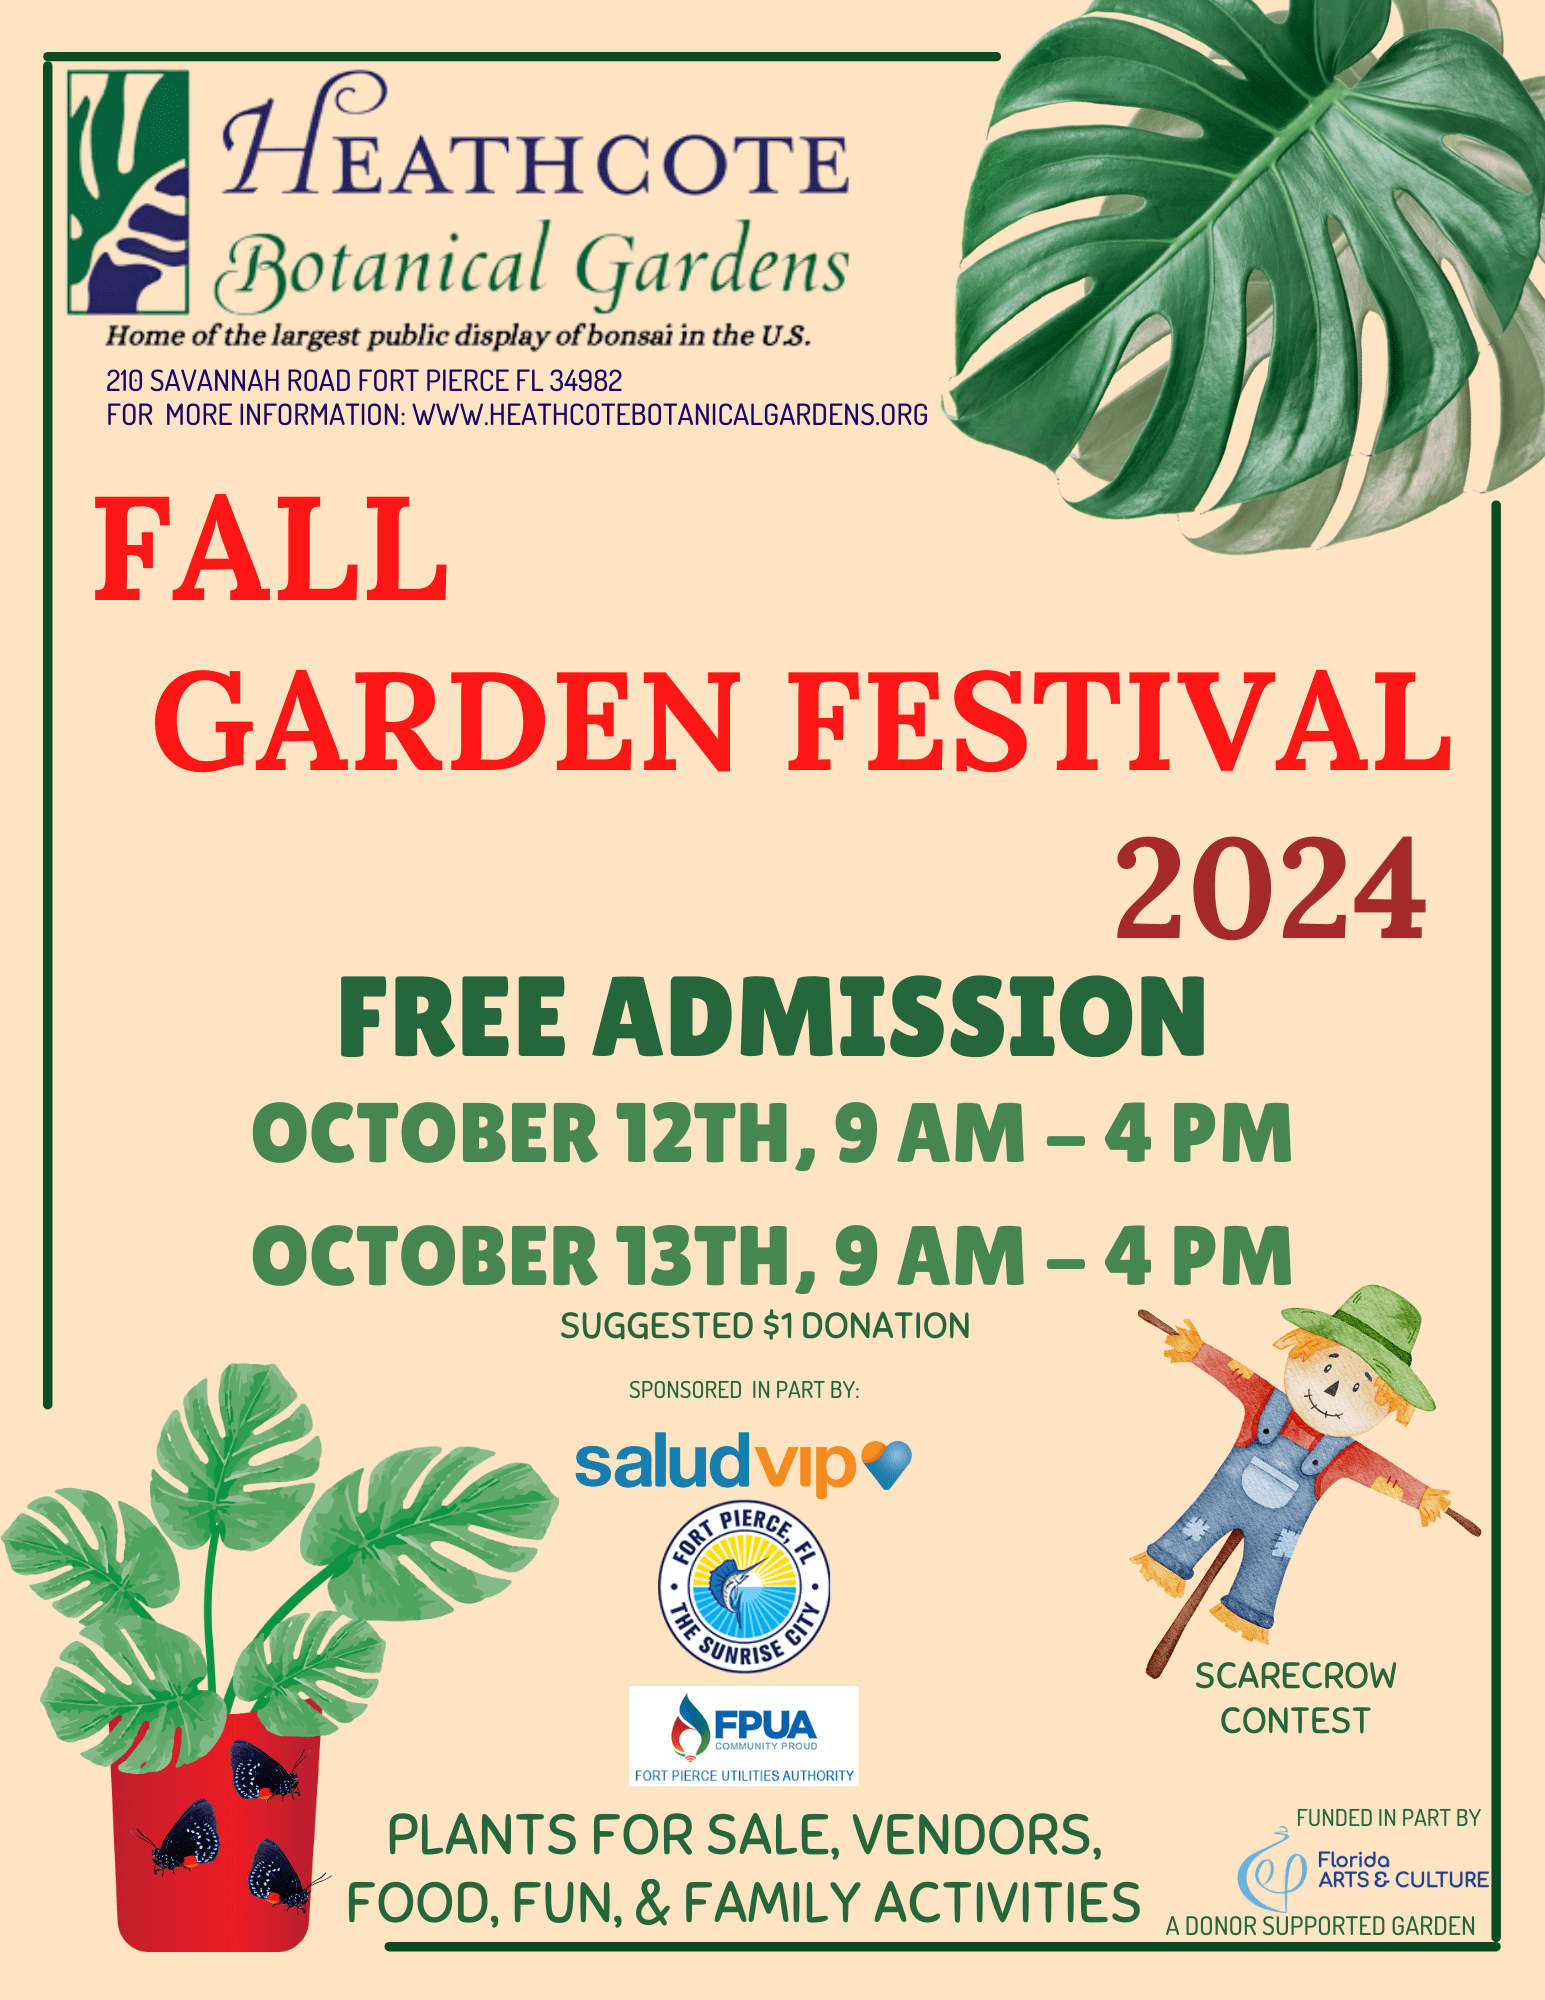 Fall Garden Festival Flyer with sponsors 2024